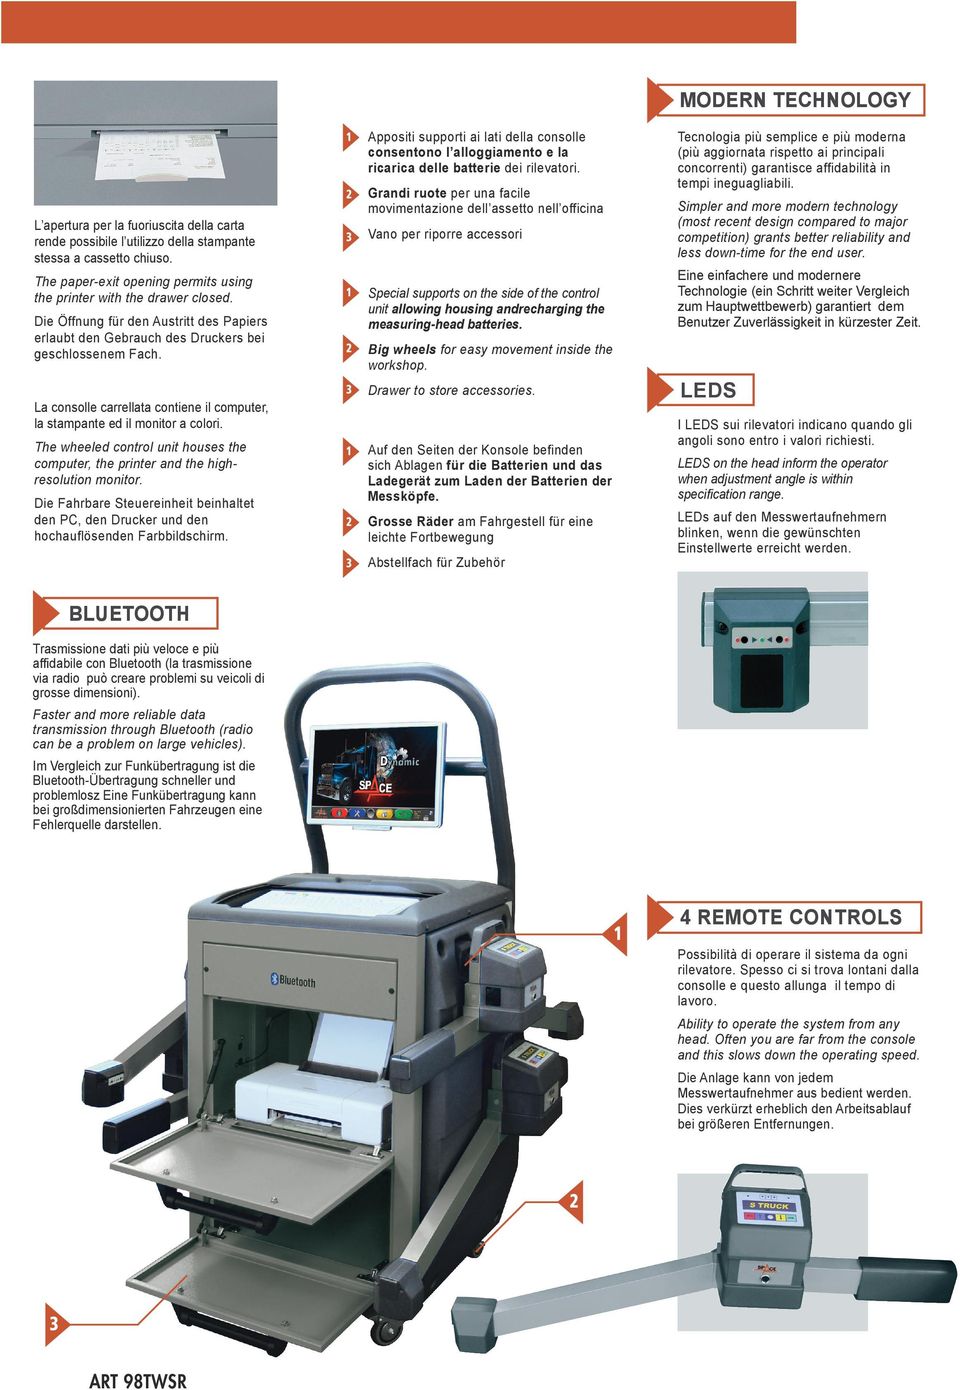 Die Öffnung für den Austritt des Papiers erlaubt den Gebrauch des Druckers bei geschlossenem Fach. La consolle carrellata contiene il computer, la stampante ed il monitor a colori.